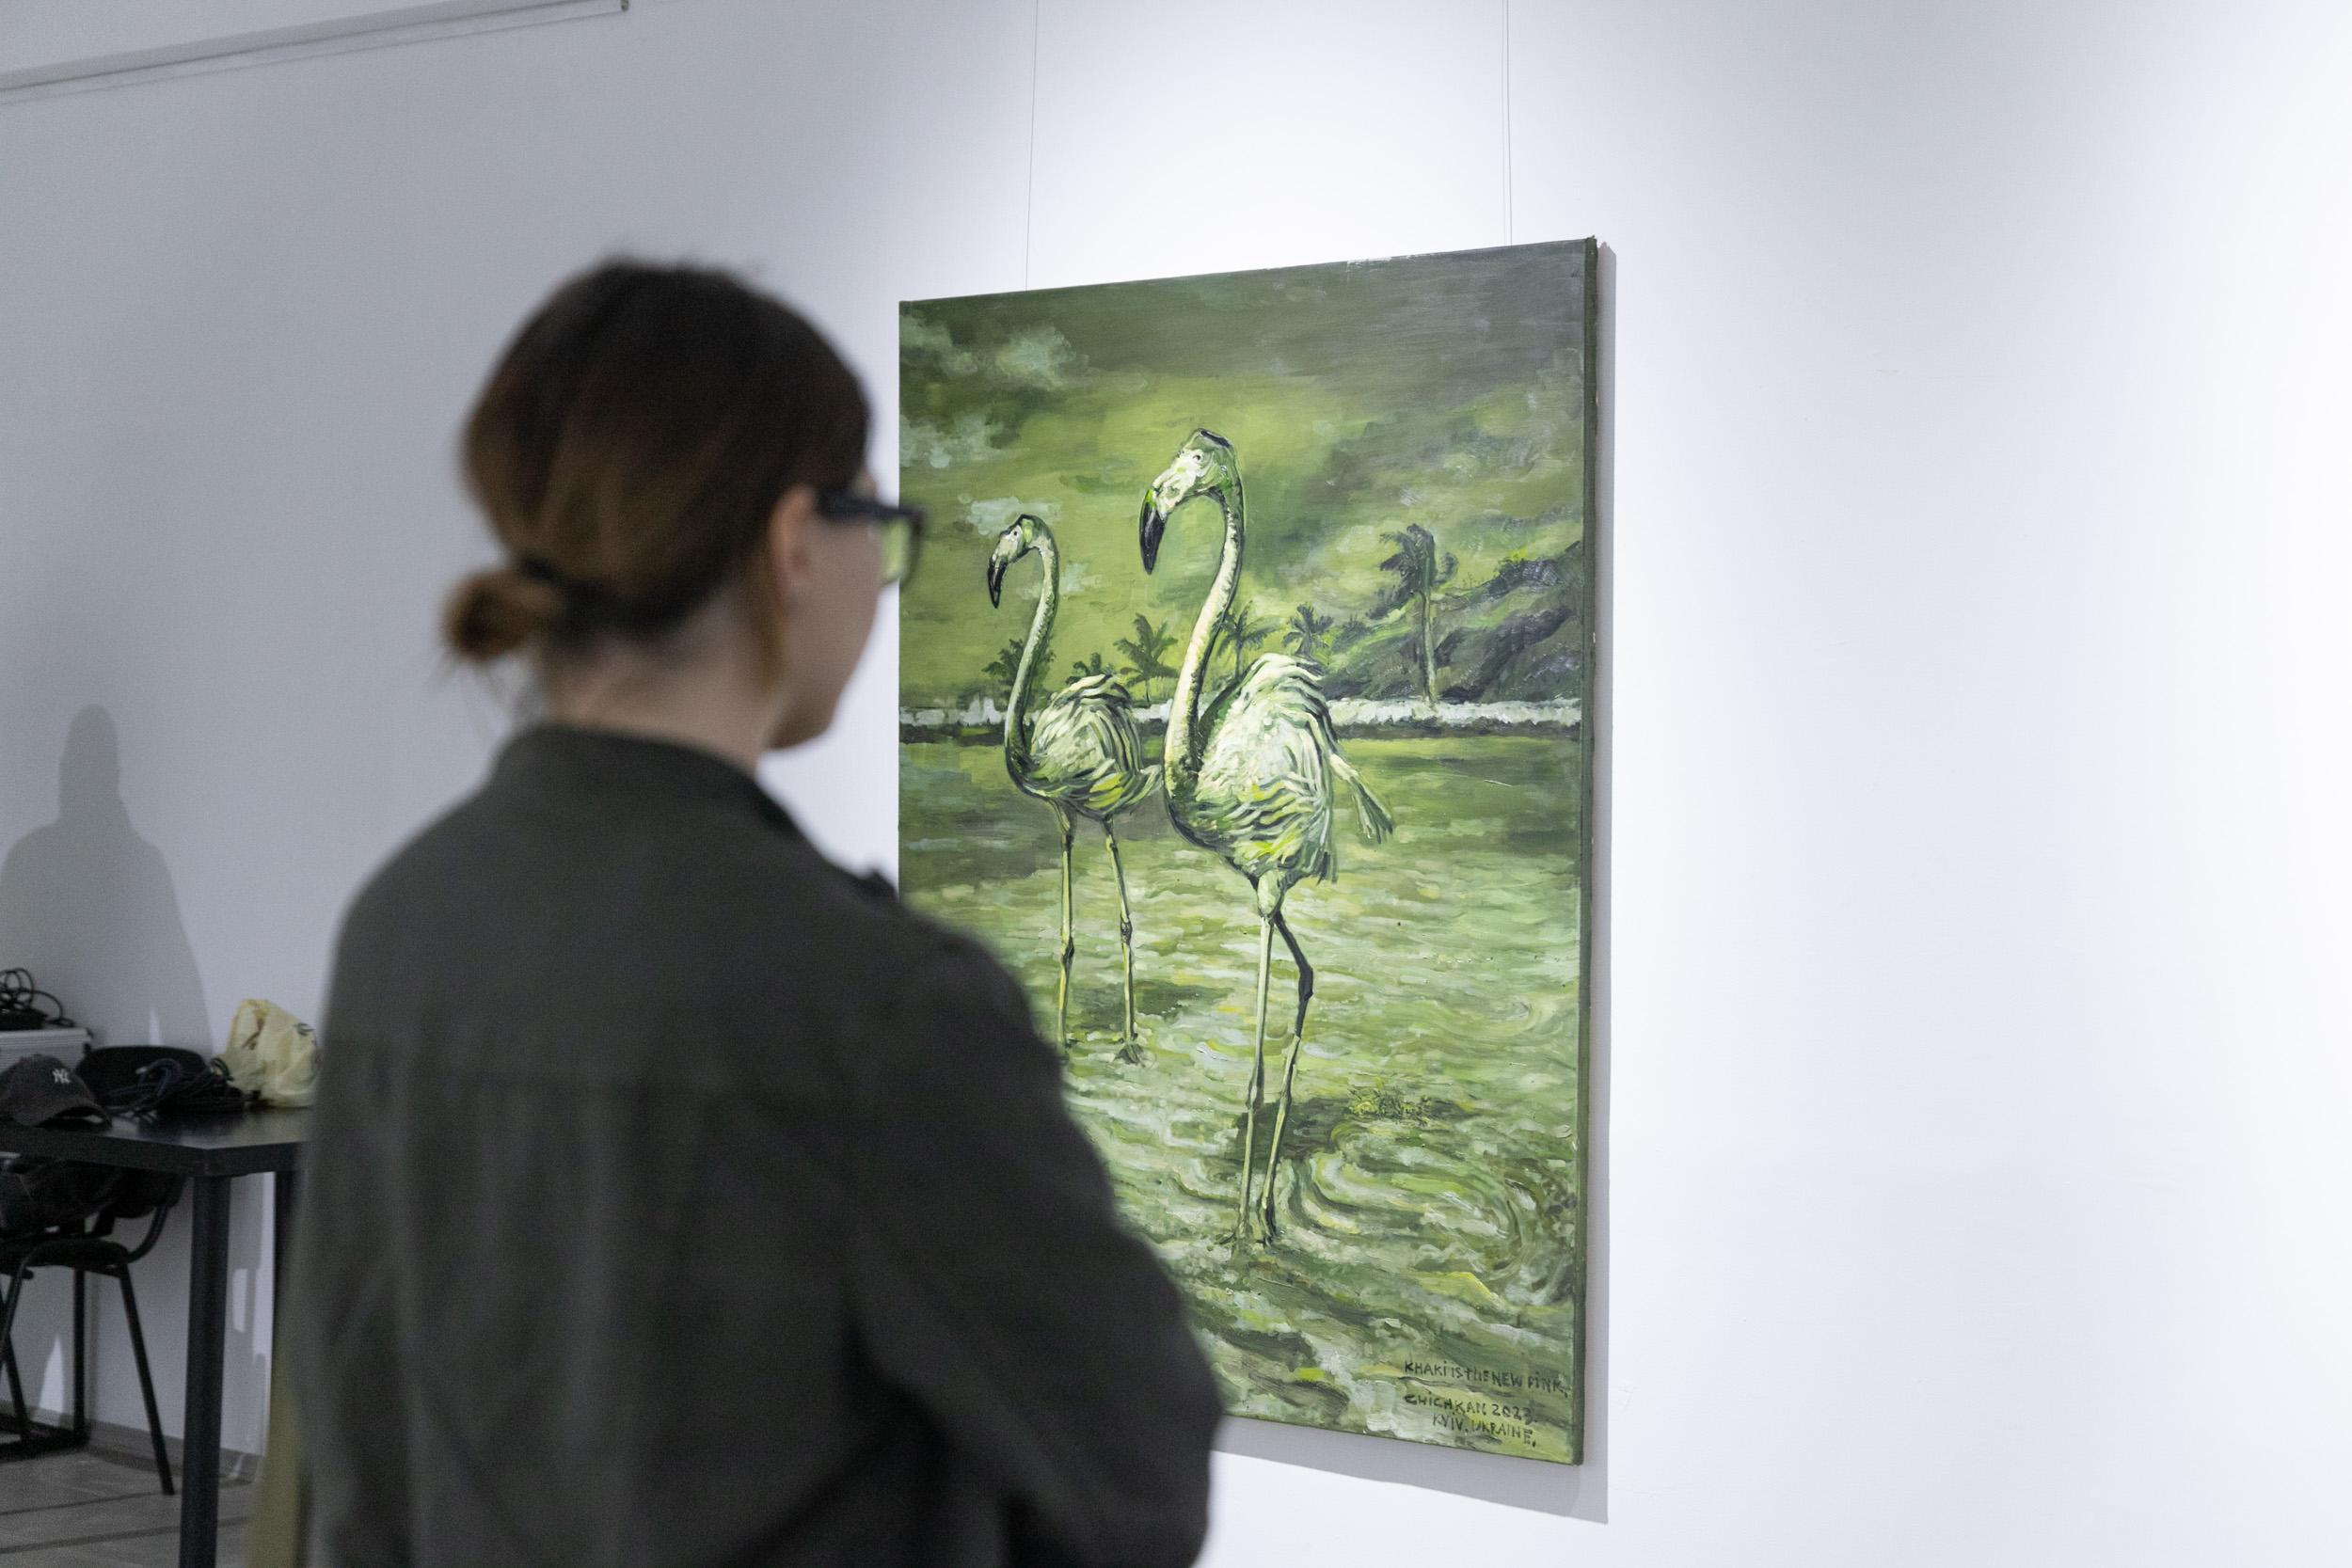 У київській міській галереї “Лавра” відкрилась виставка художника Іллі Чічкана “Khaki is a new pink”